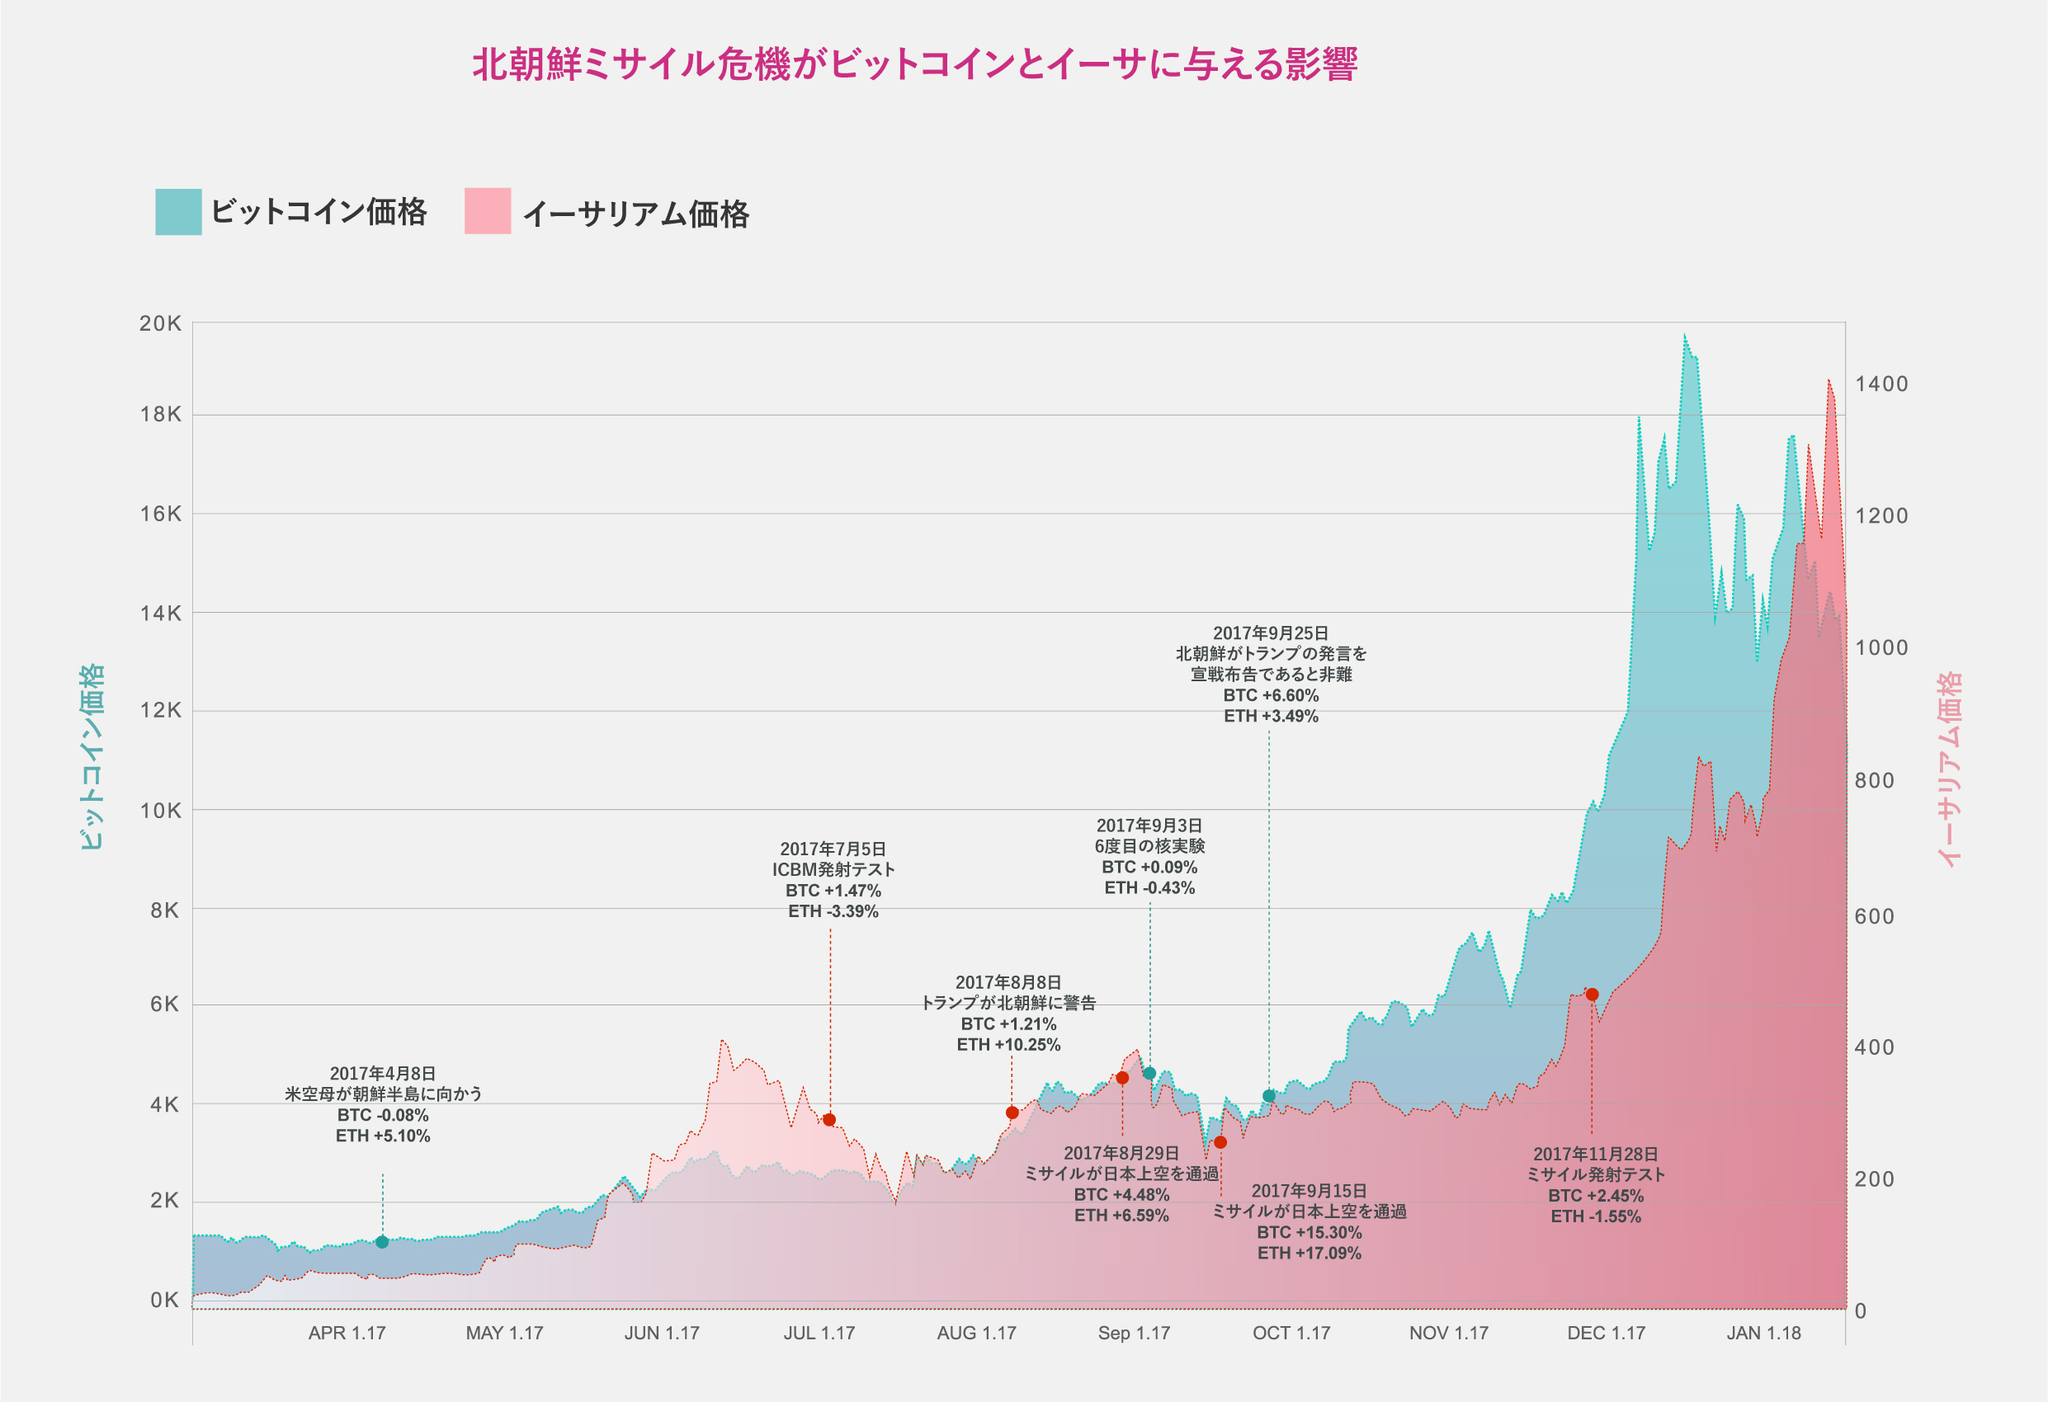 [グラフ]北朝鮮関連事件とビットコイン、イーサの価格変動